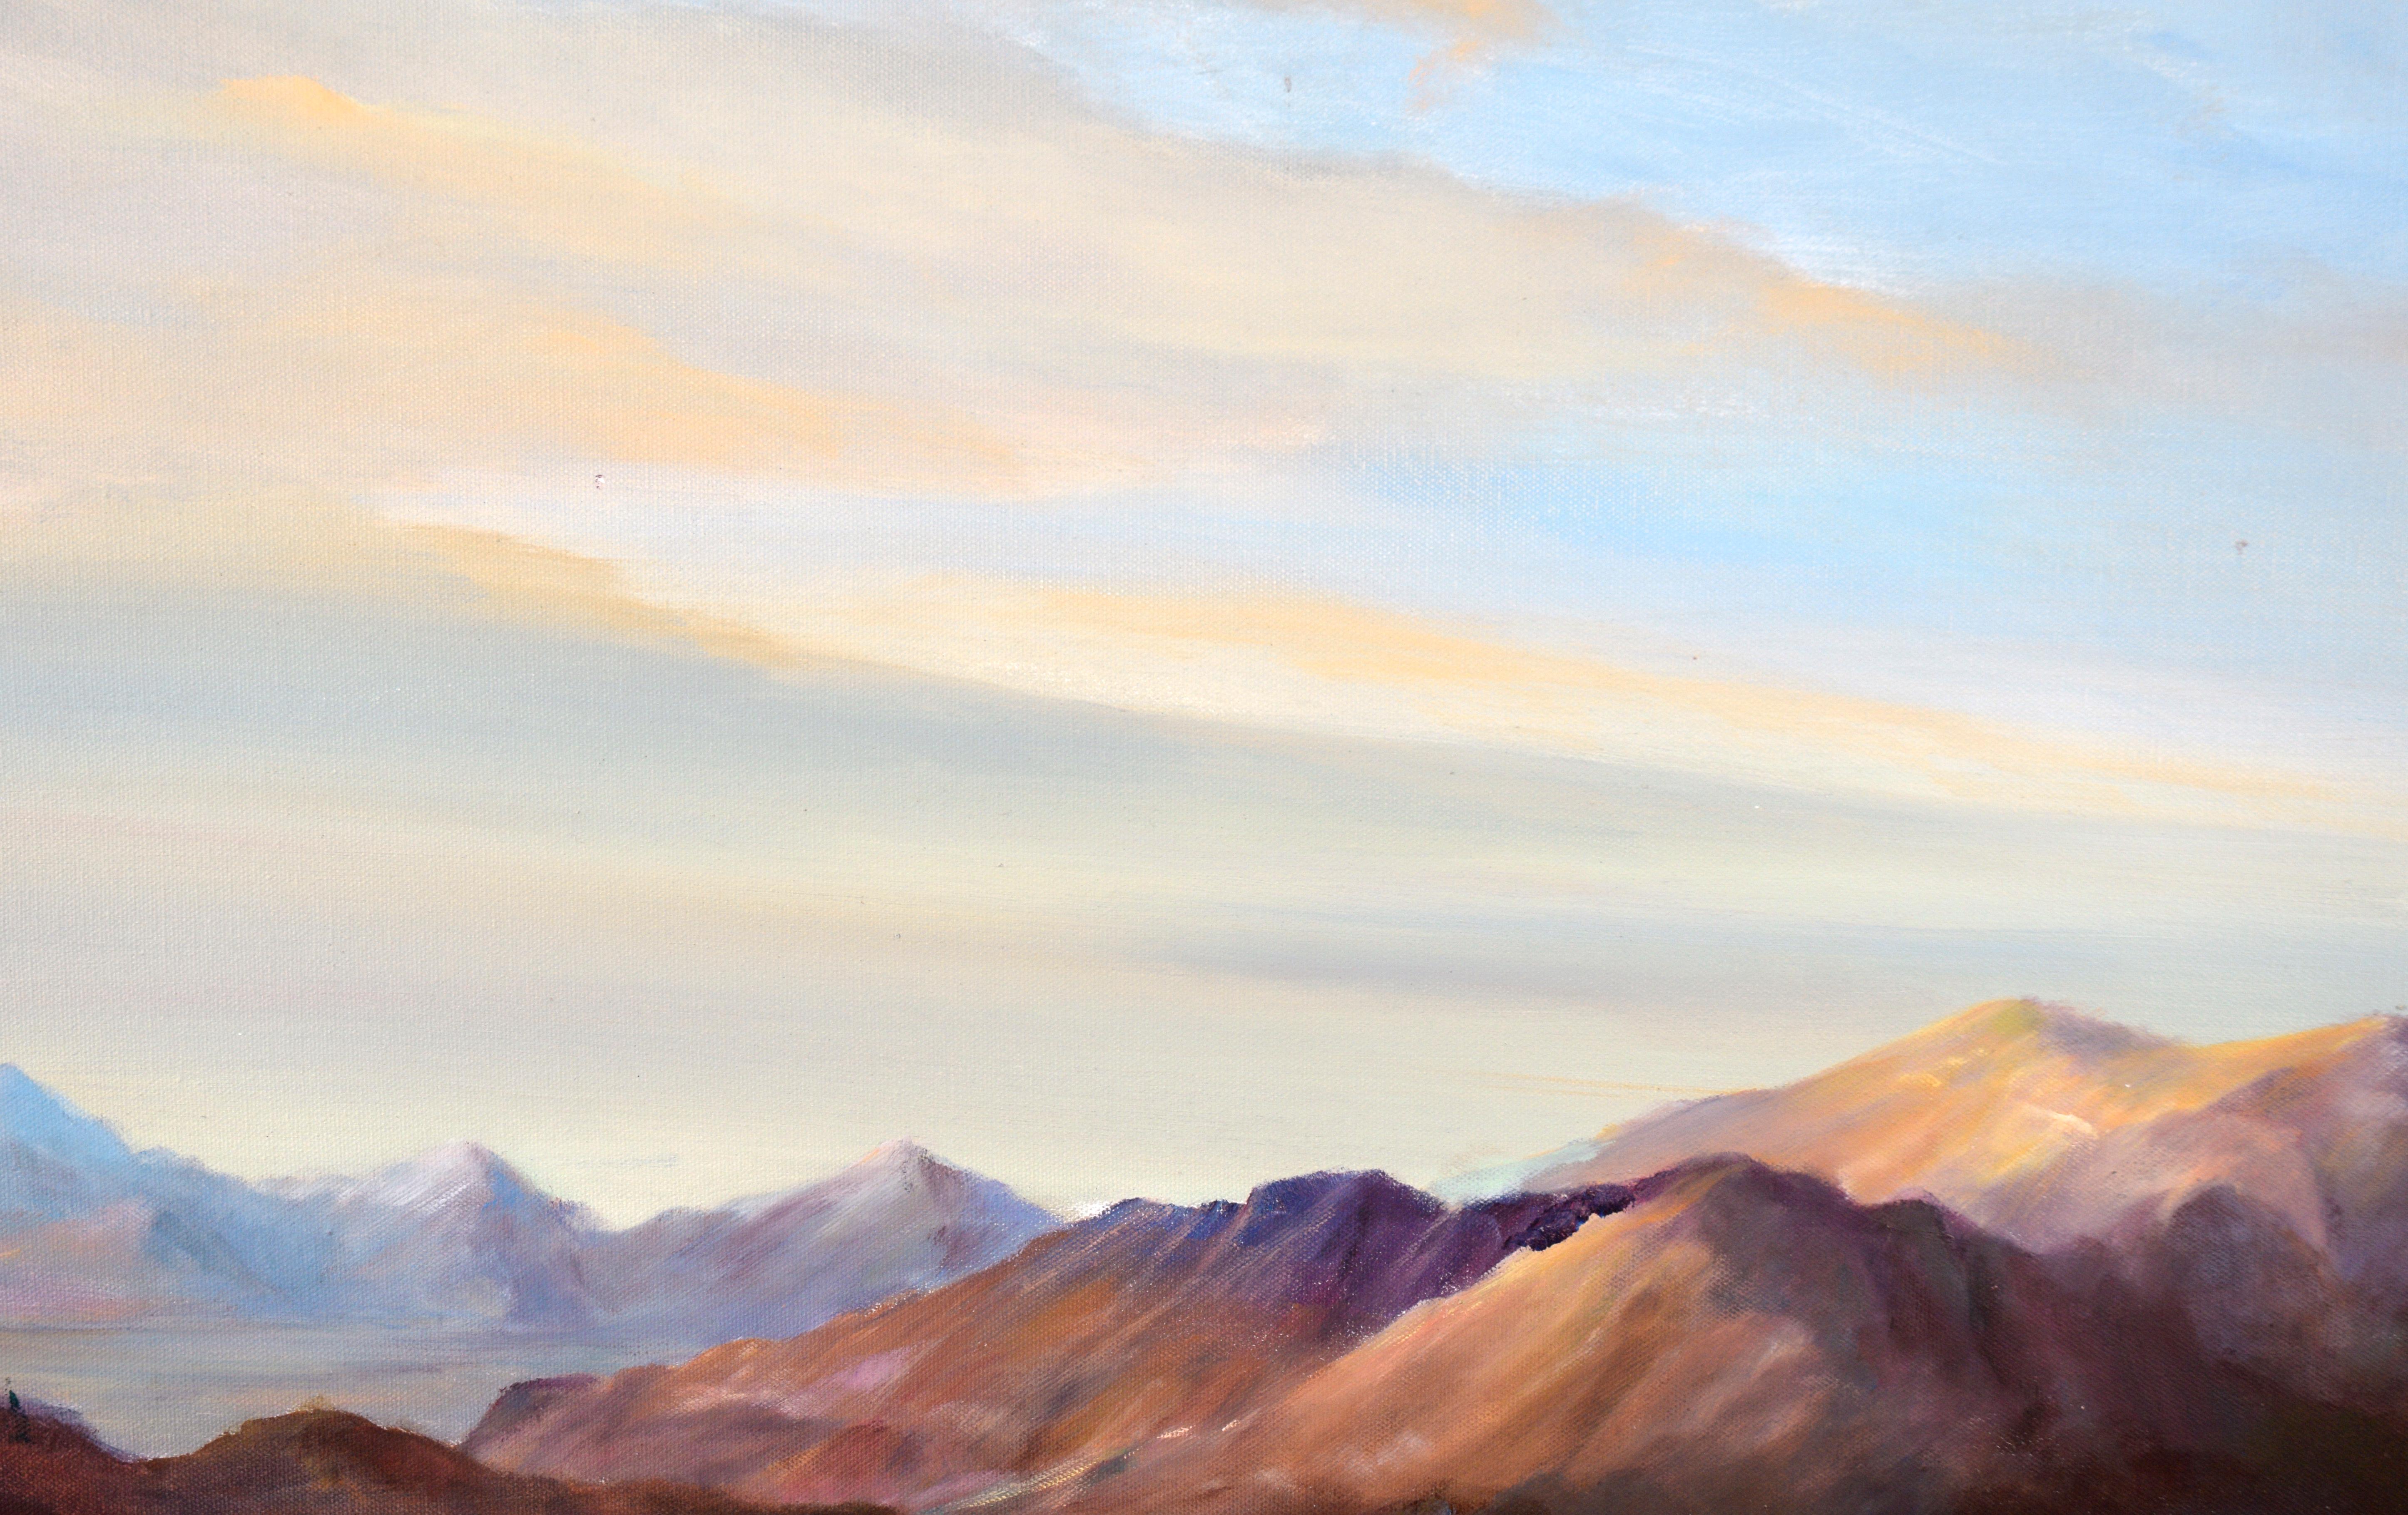 Le cerf aux montagnes violettes - Paysage à l'huile sur toile

Paysage de montagne dramatique de l'artiste californien Ken Lucas (américain, XXe siècle). Des cerfs broutent dans les prairies au pied d'une chaîne de montagnes. Les montagnes